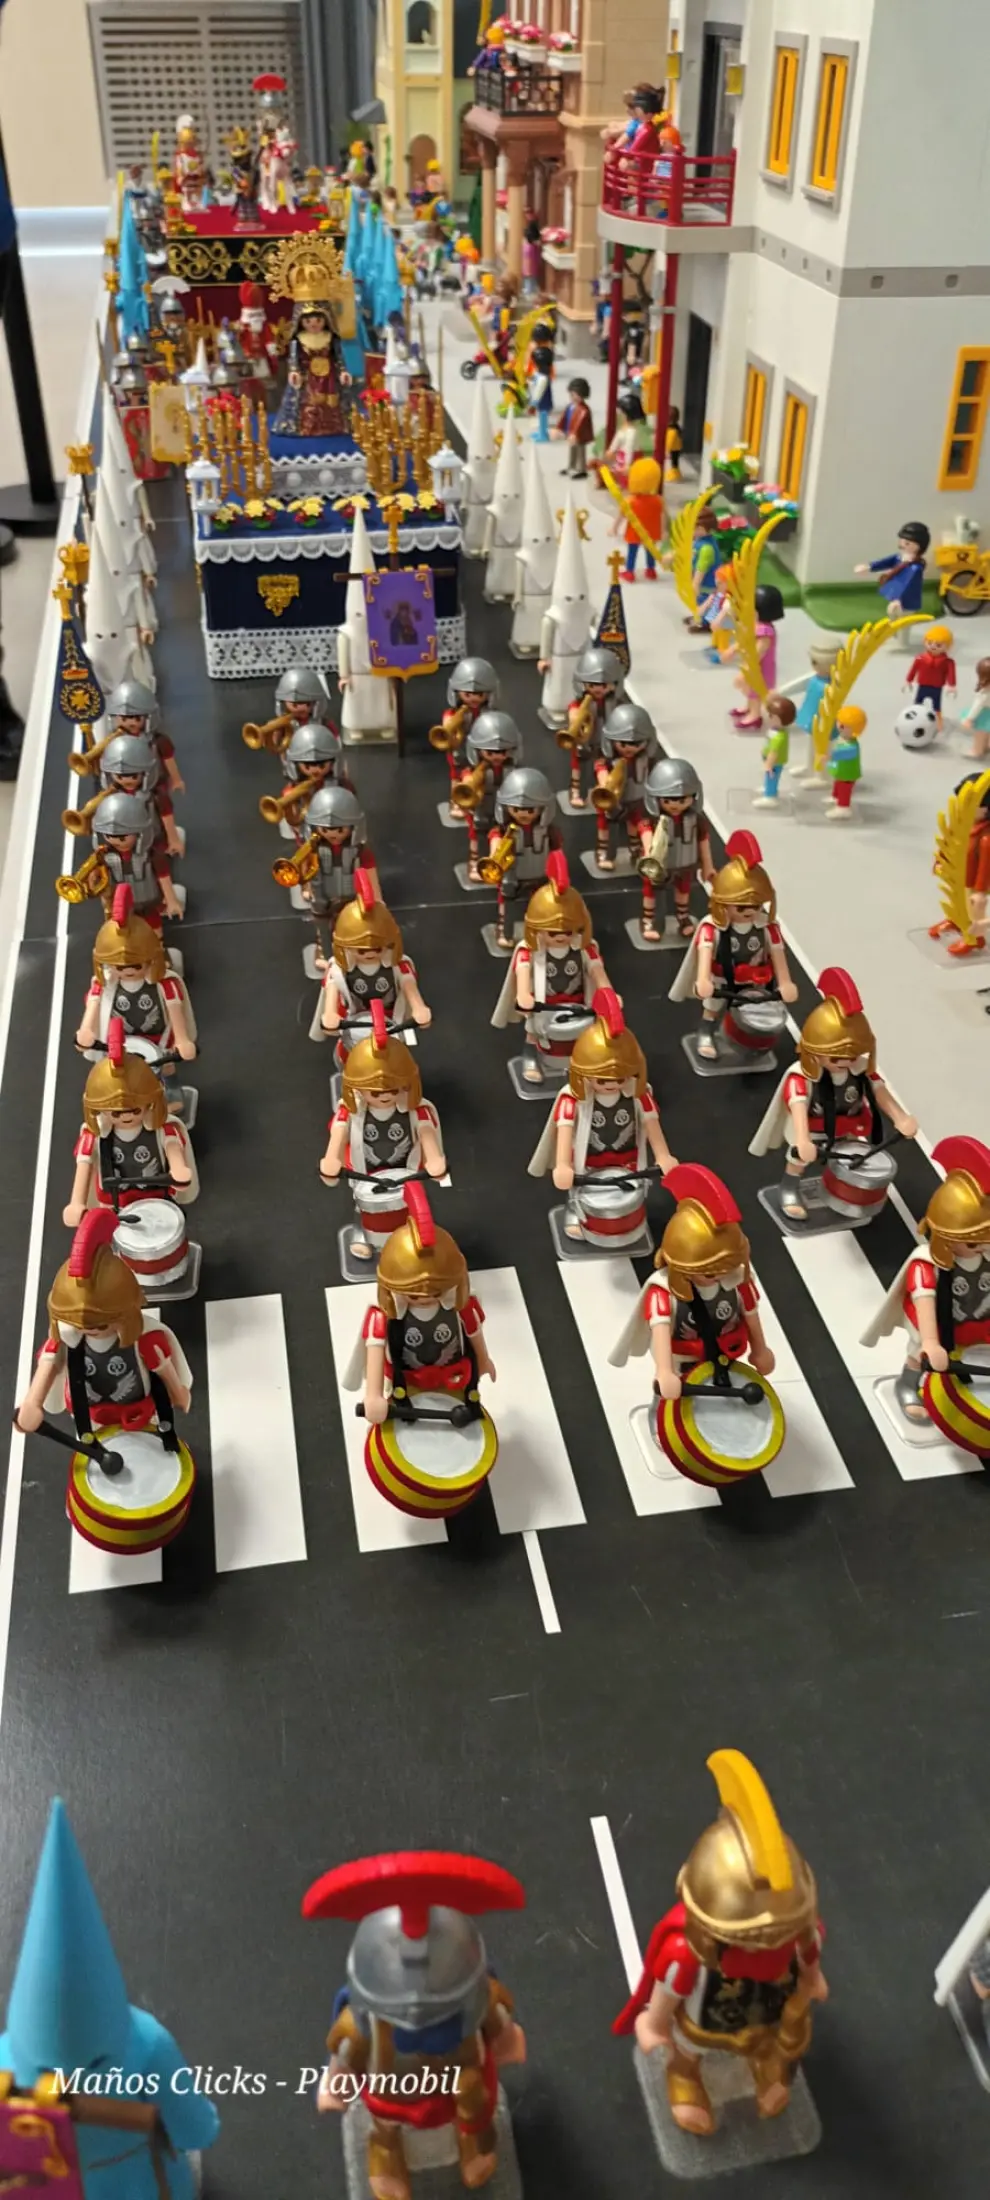 Diorama de clicks de Playmobil del Hospital General de la Defensa